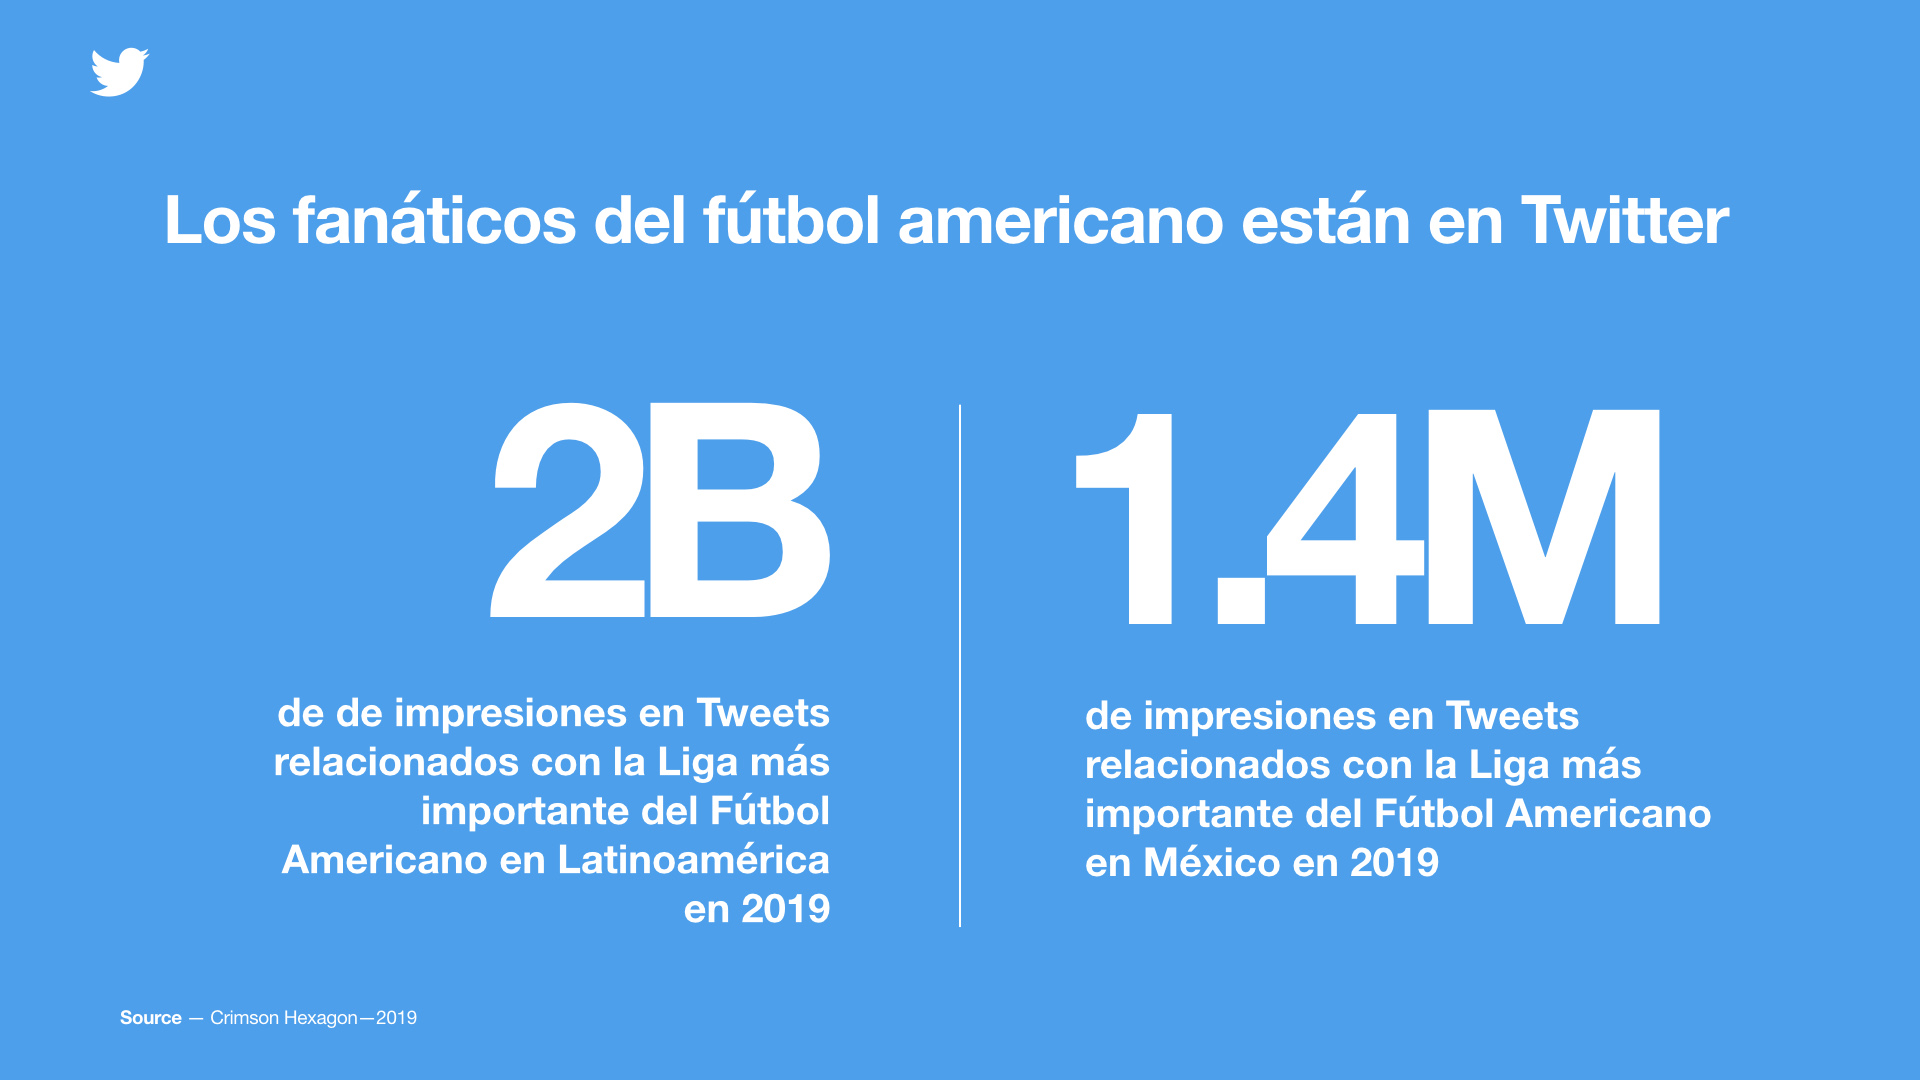 Fútbol Americano en Twitter: empieza con fanáticos